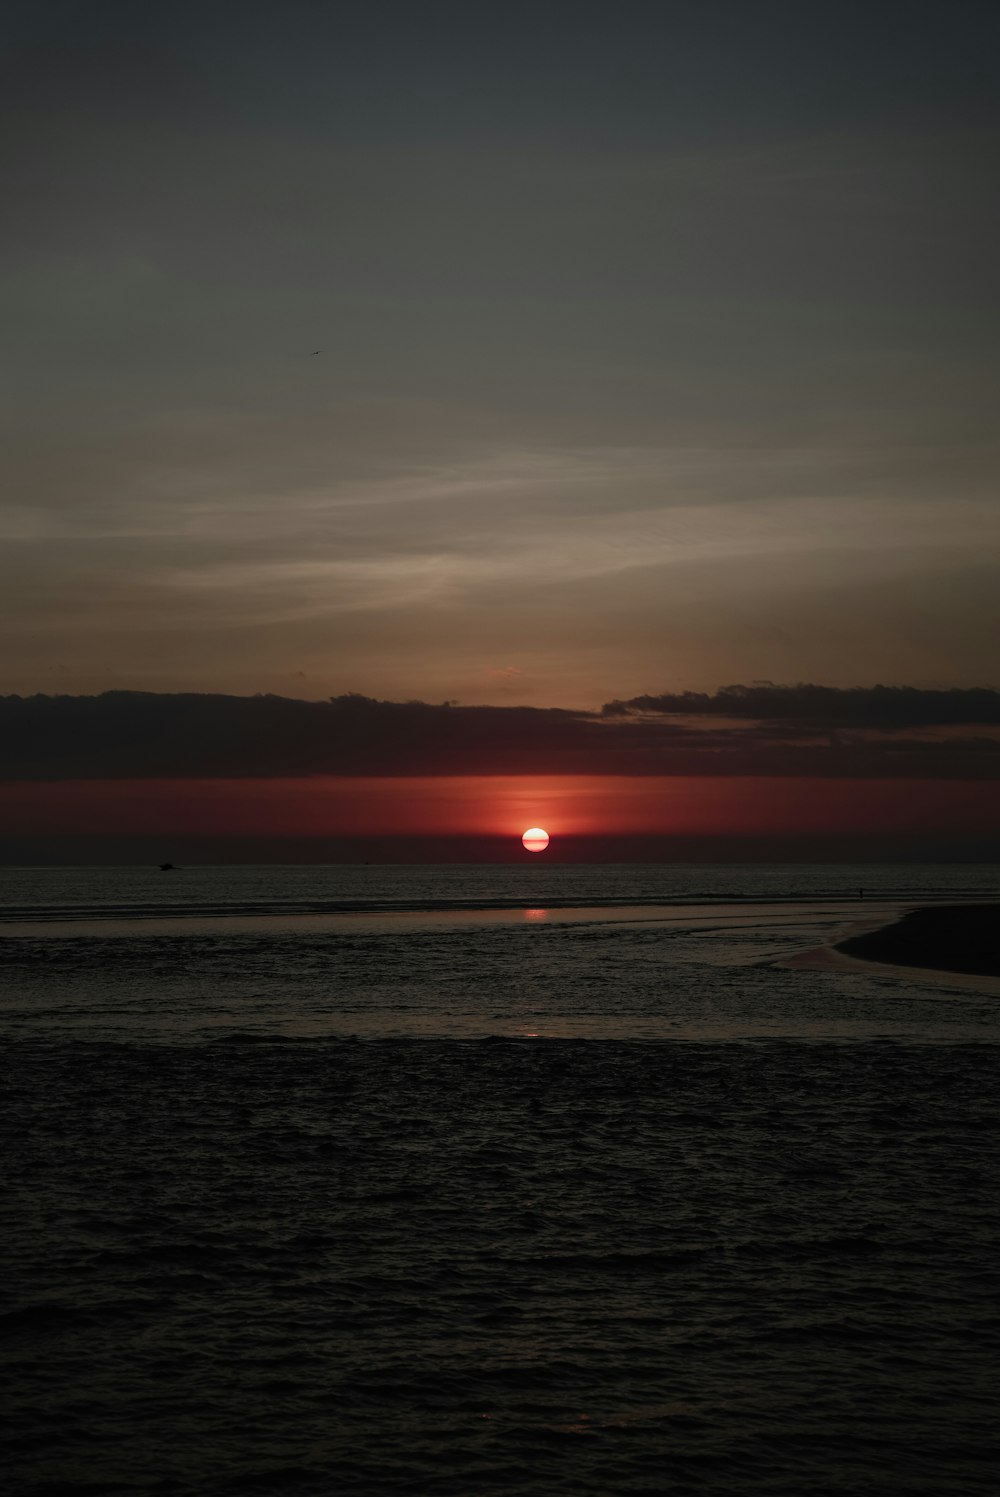 Le soleil se couche sur l’océan avec un bateau au loin